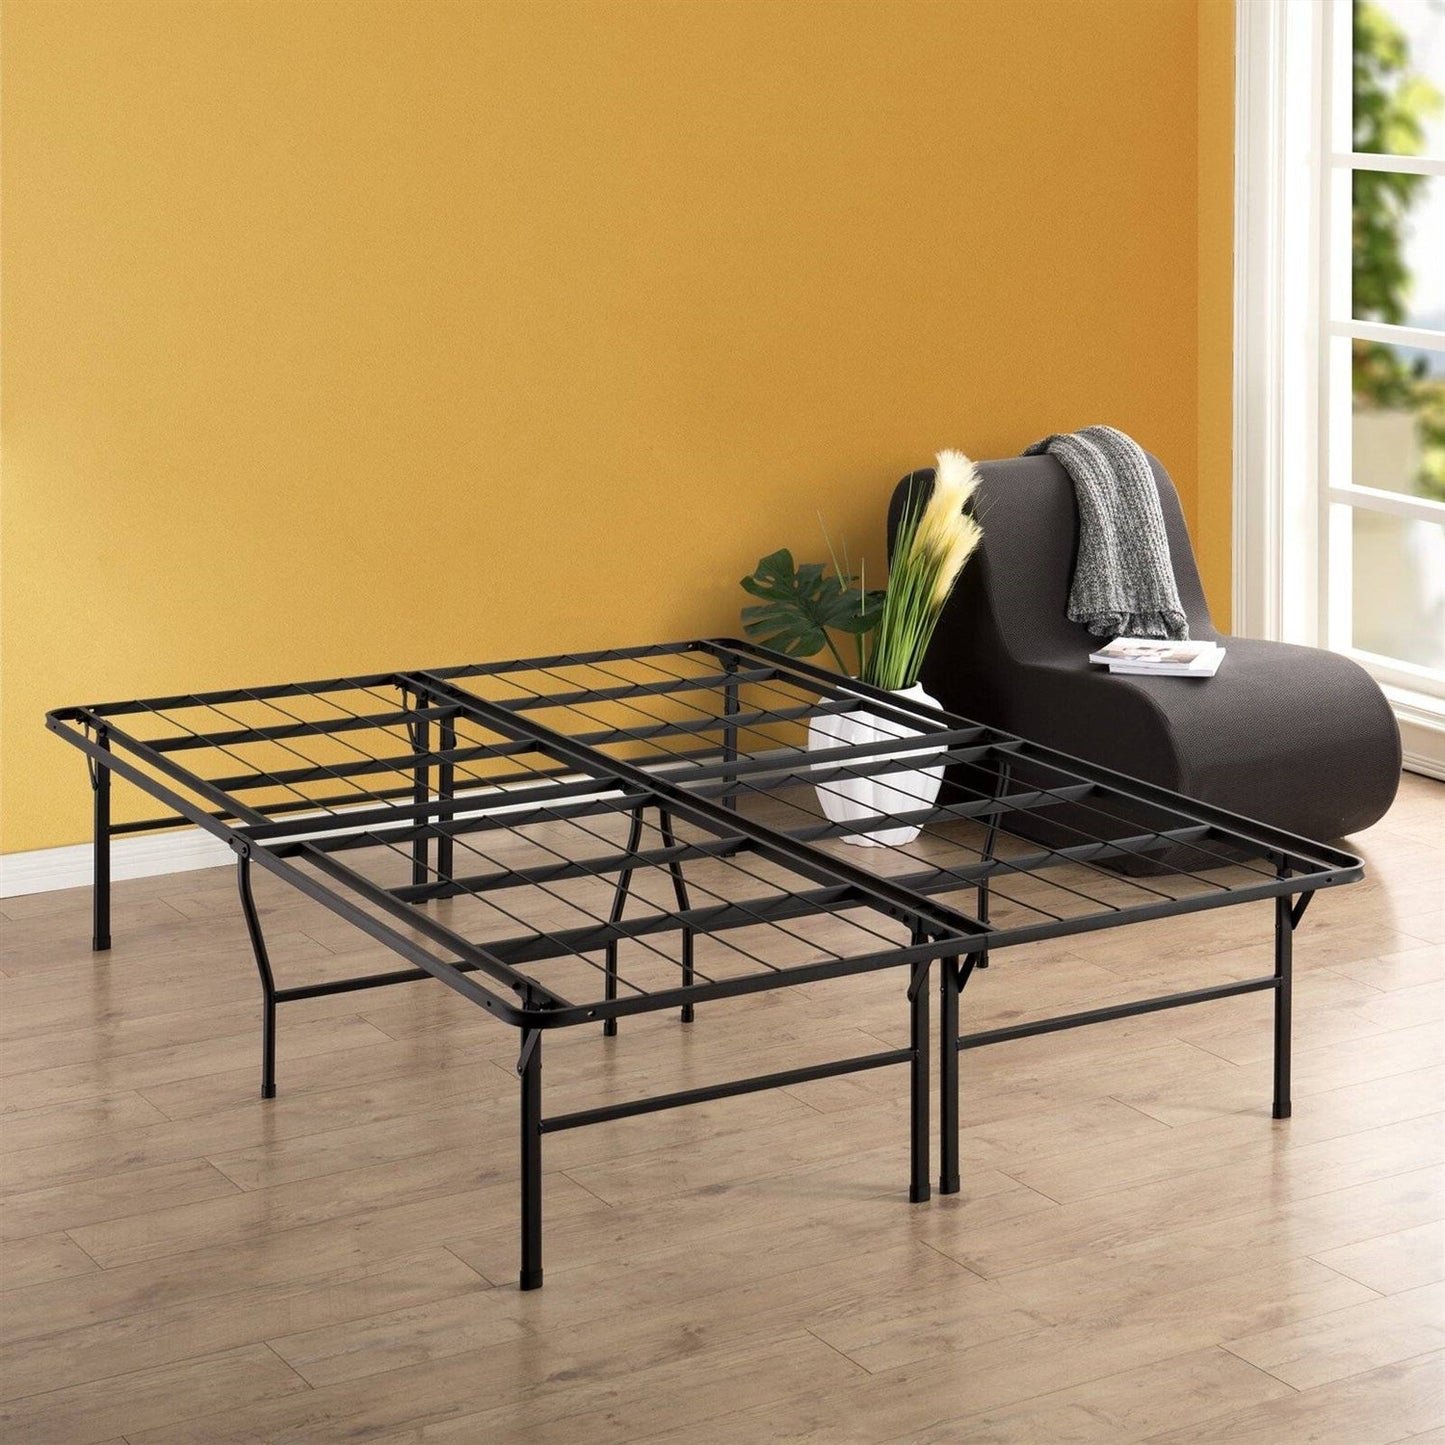 Bedroom > Bed Frames > Platform Beds - Queen Size 18-inch High Rise Folding Metal Platform Bed Frame